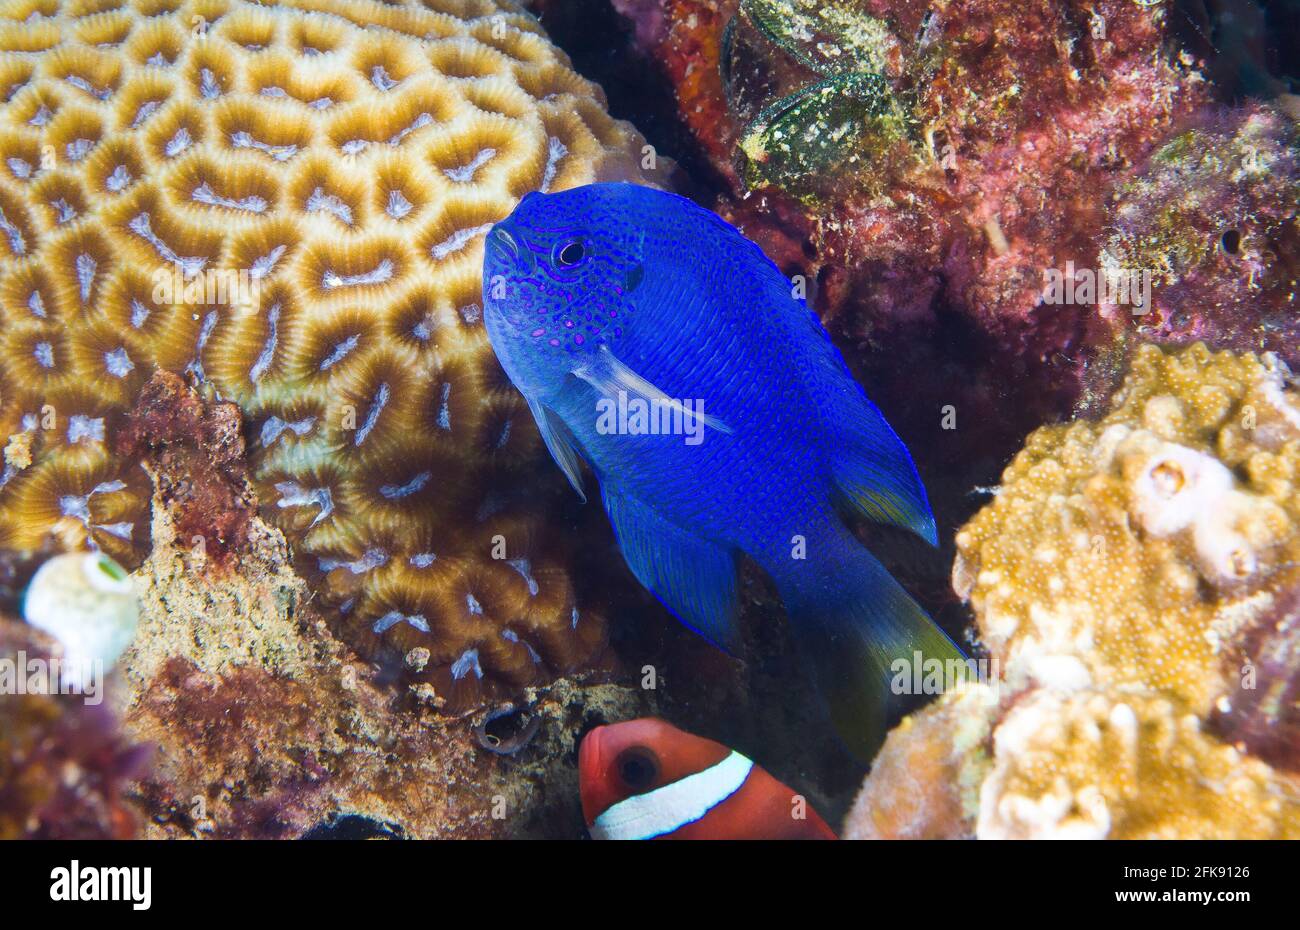 Blauer Damegoist in seinem Korallenheim, Tomatenanemonefisch unten, Palau, Mikronesien Stockfoto